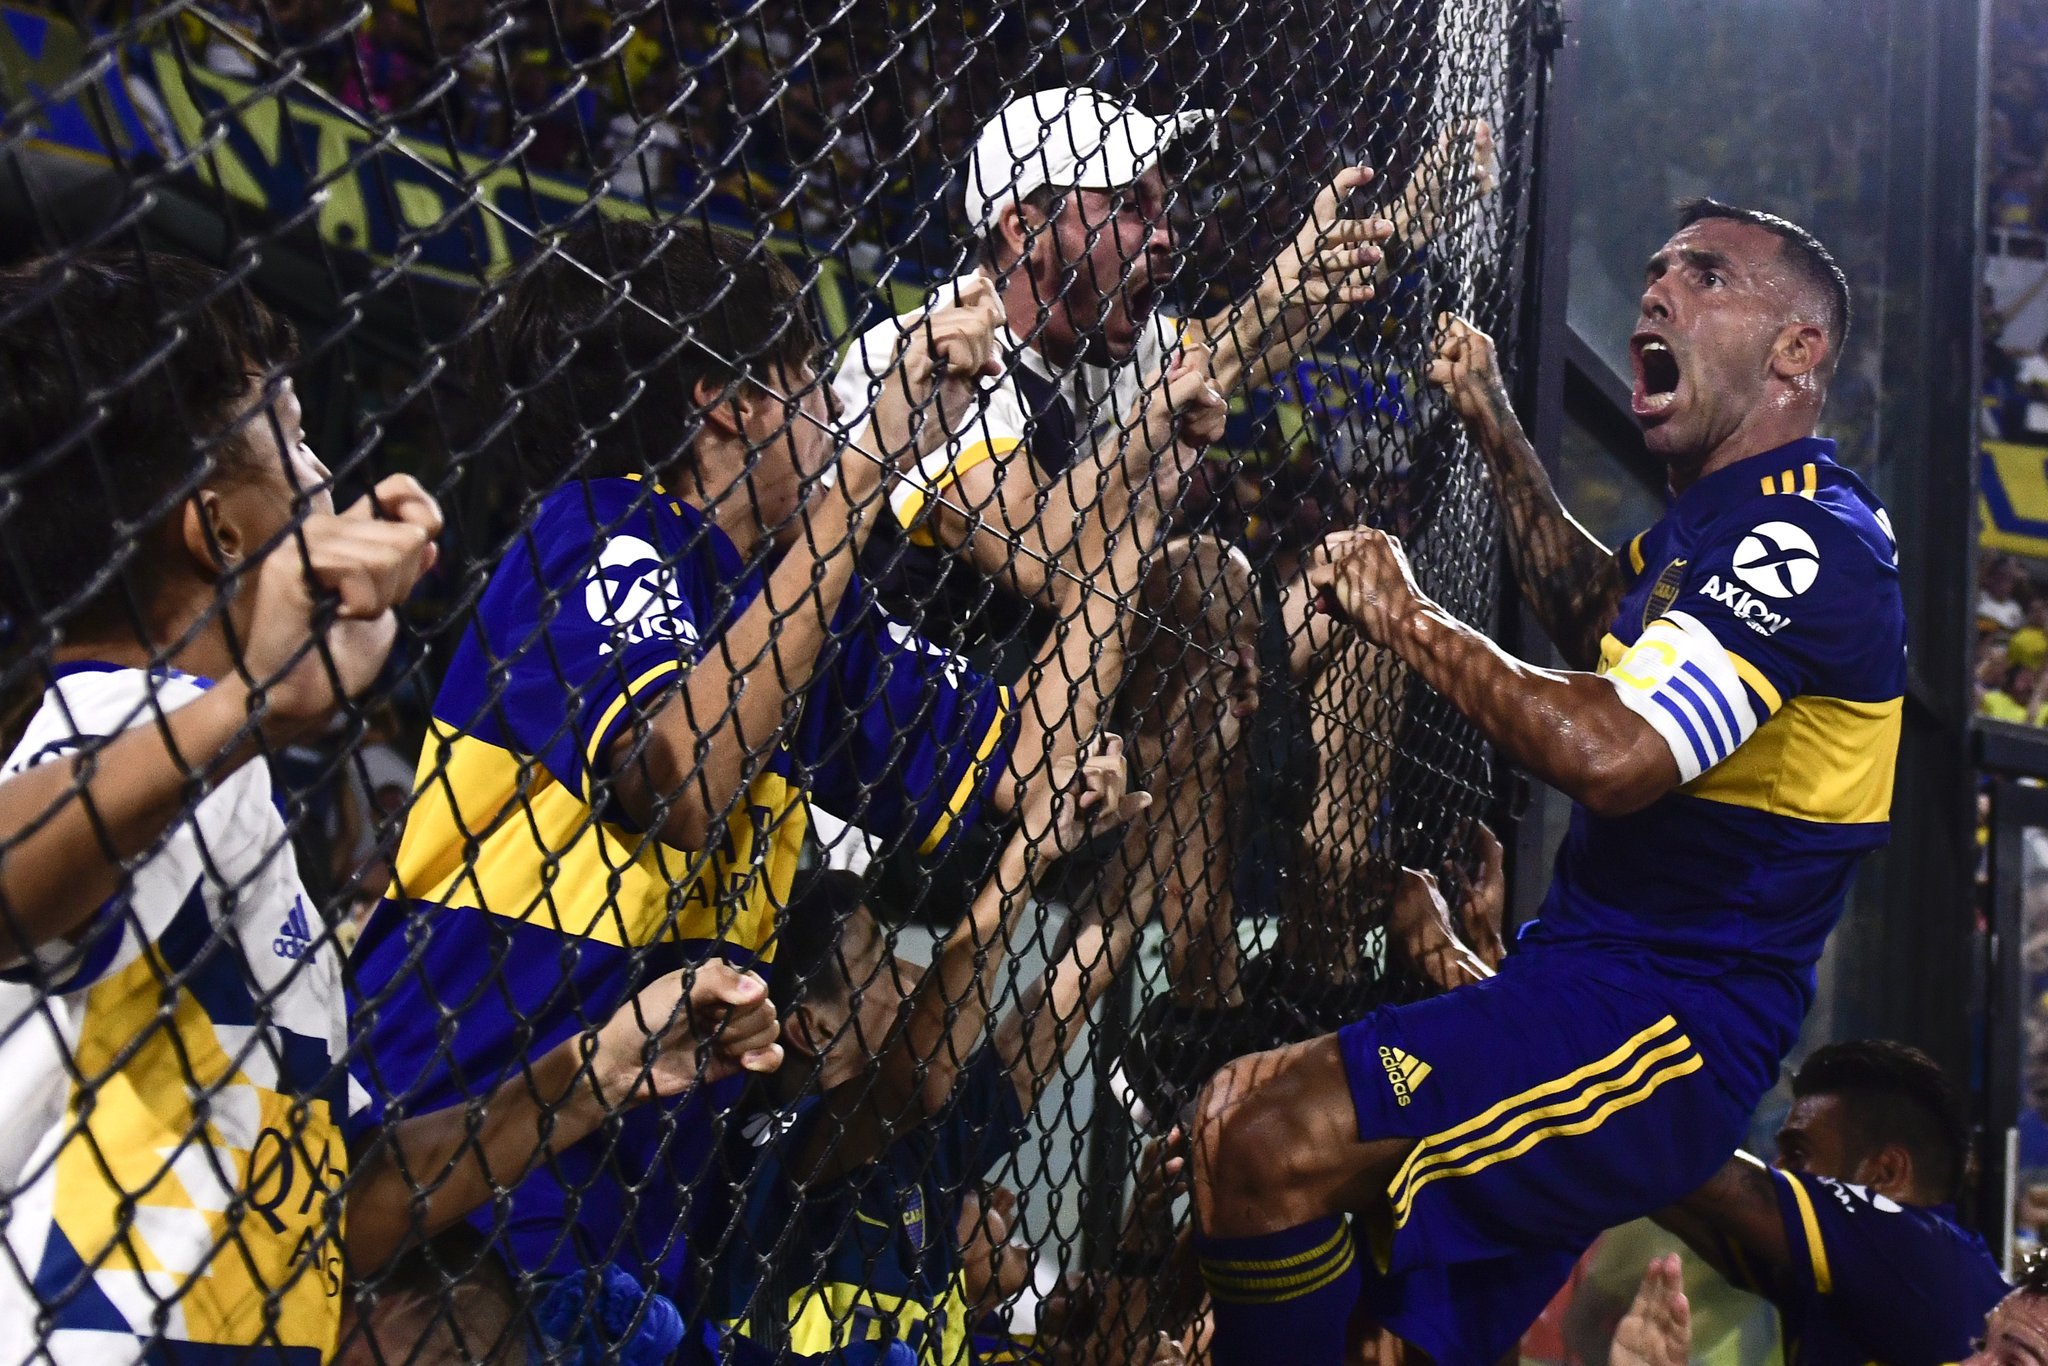 Carlos Tevez Bình minh trở lại ở Boca Juniors với gã du mục hình ảnh gốc 2